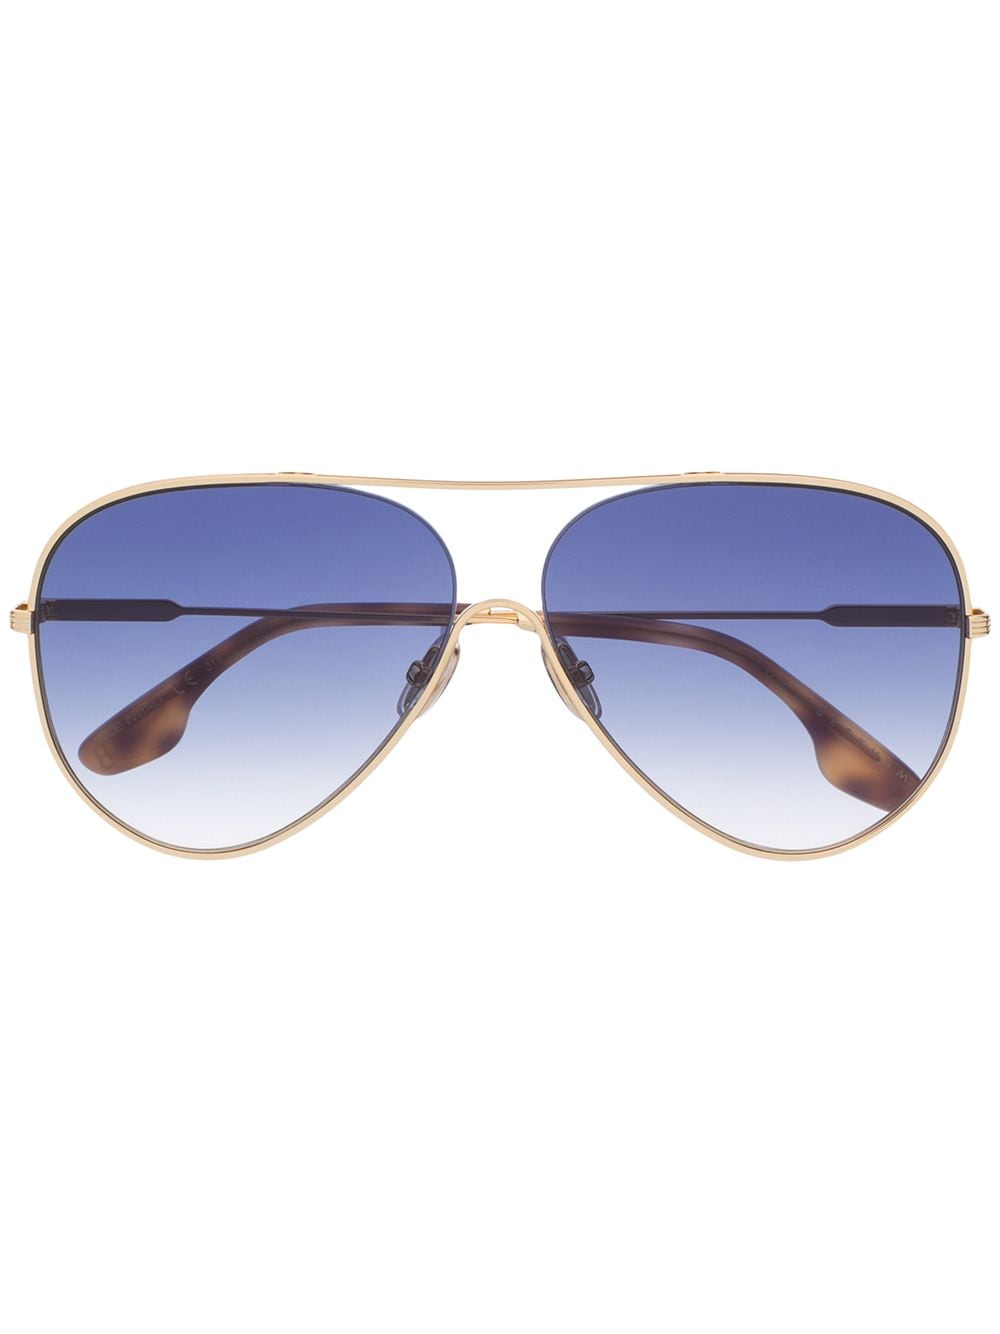 Victoria Beckham VB133S pilot-frame sunglasses - Gold von Victoria Beckham